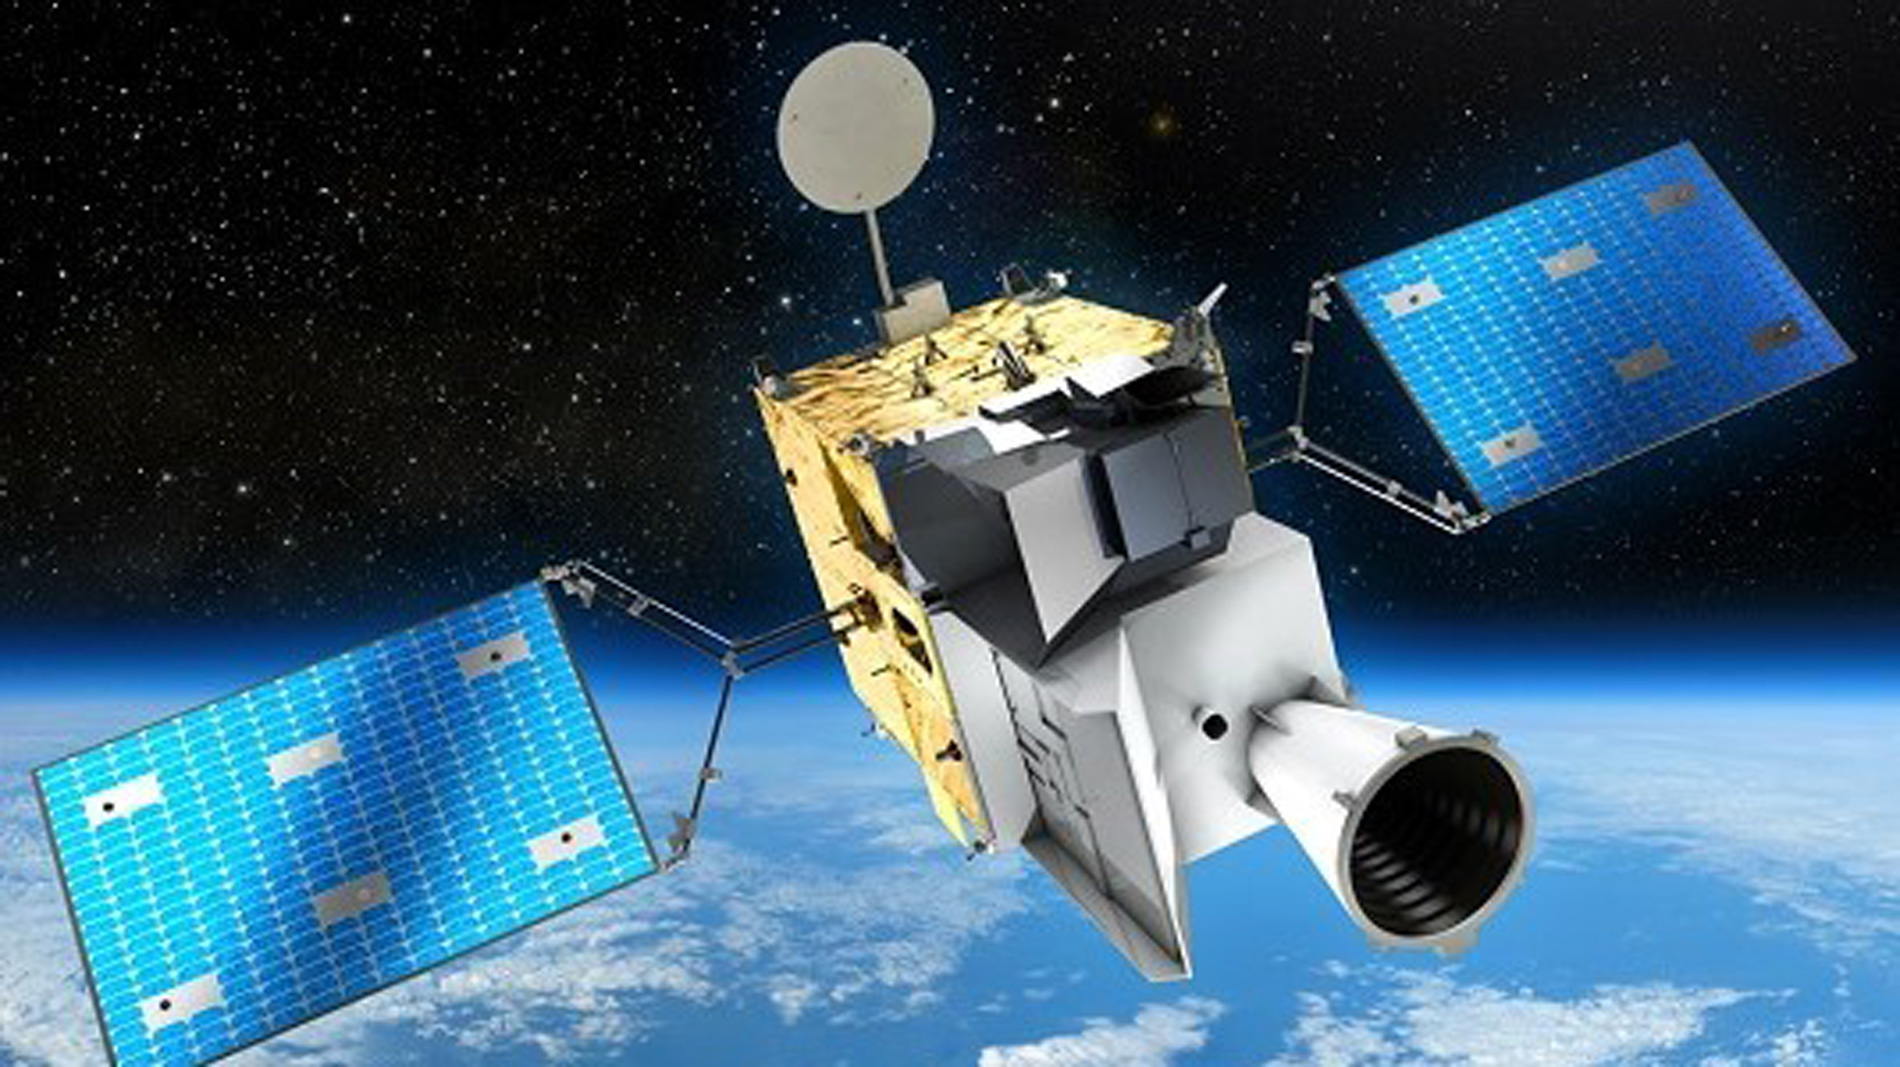 OHB System'S MTG satellite